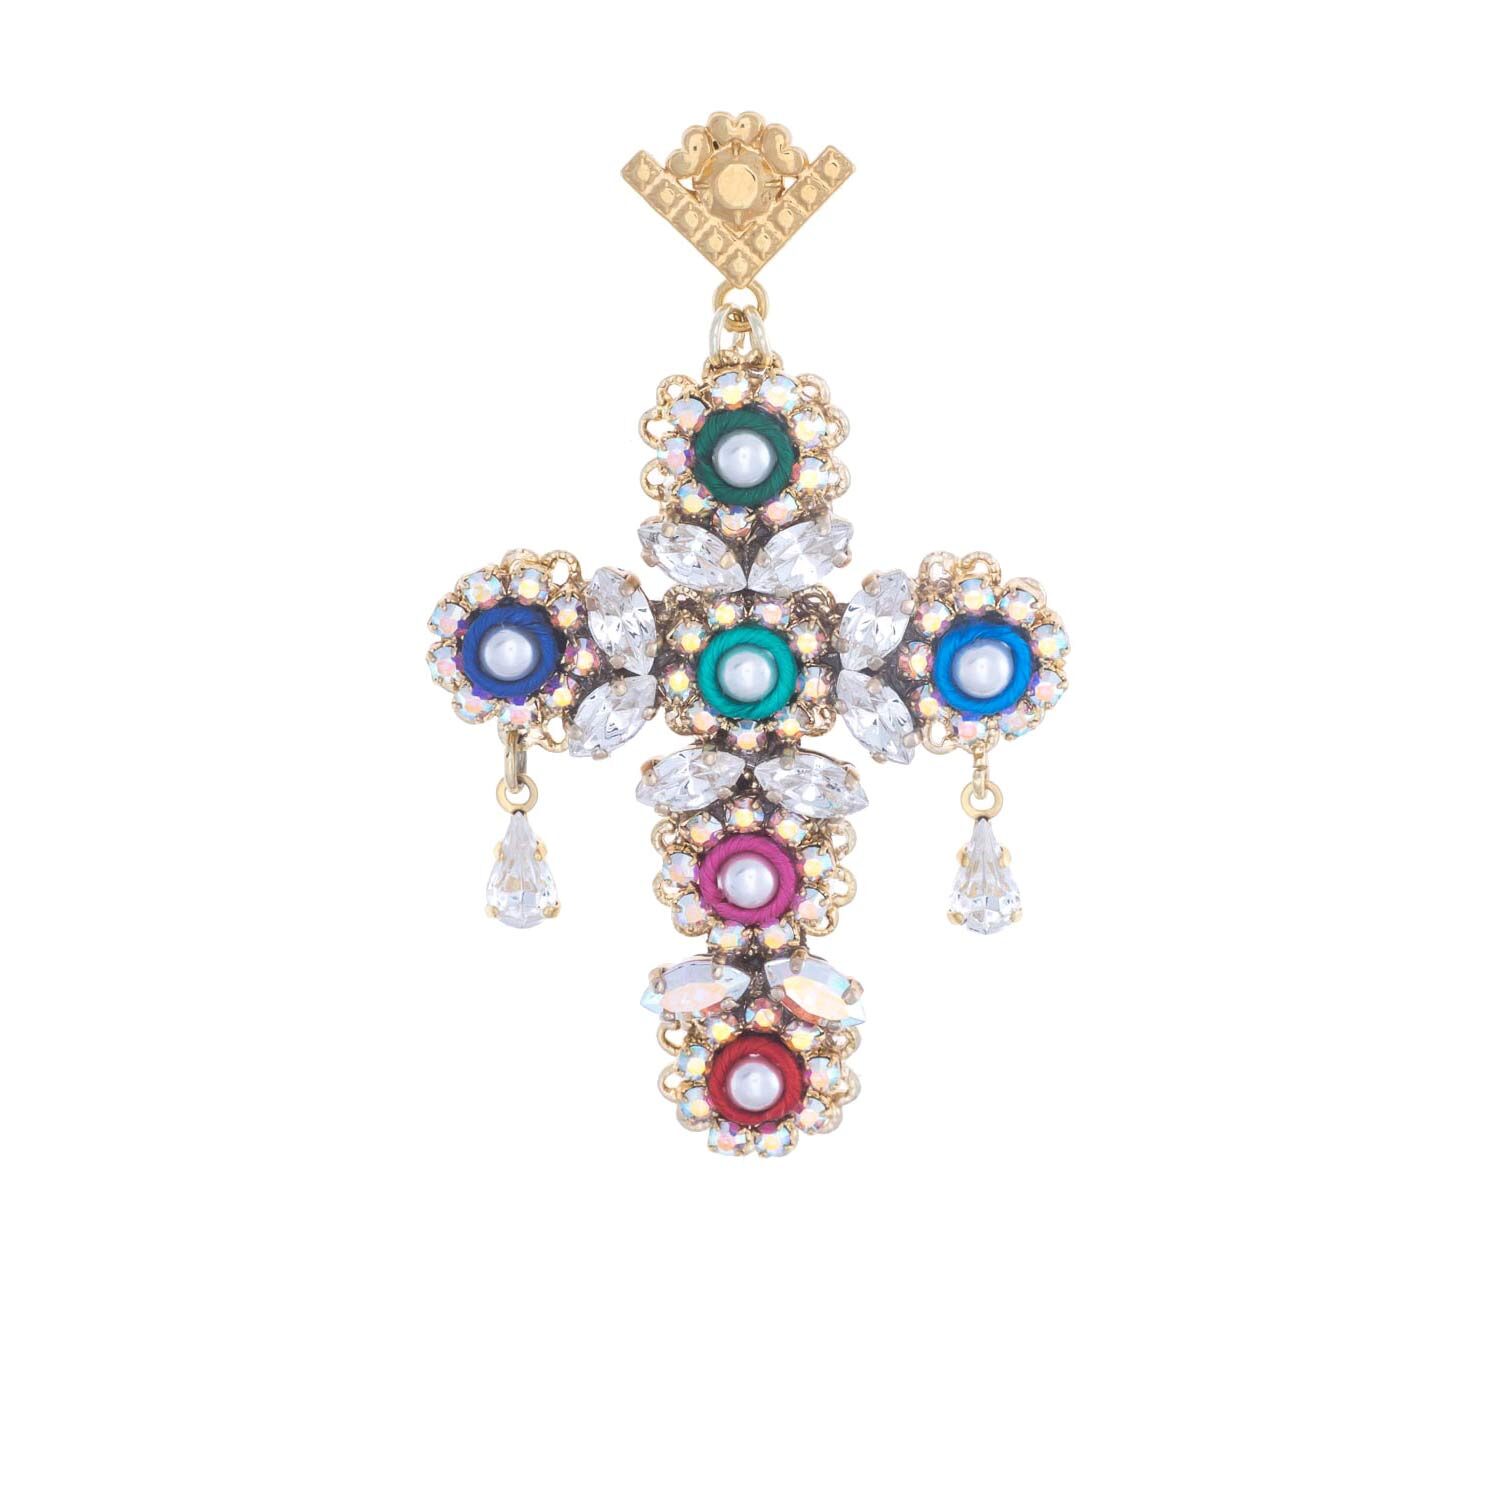 Orecchino pendente colorato a forma di croce con decorazioni floreali e foglioline cristalli swarovski chiari, passamaneria in seta multicolore